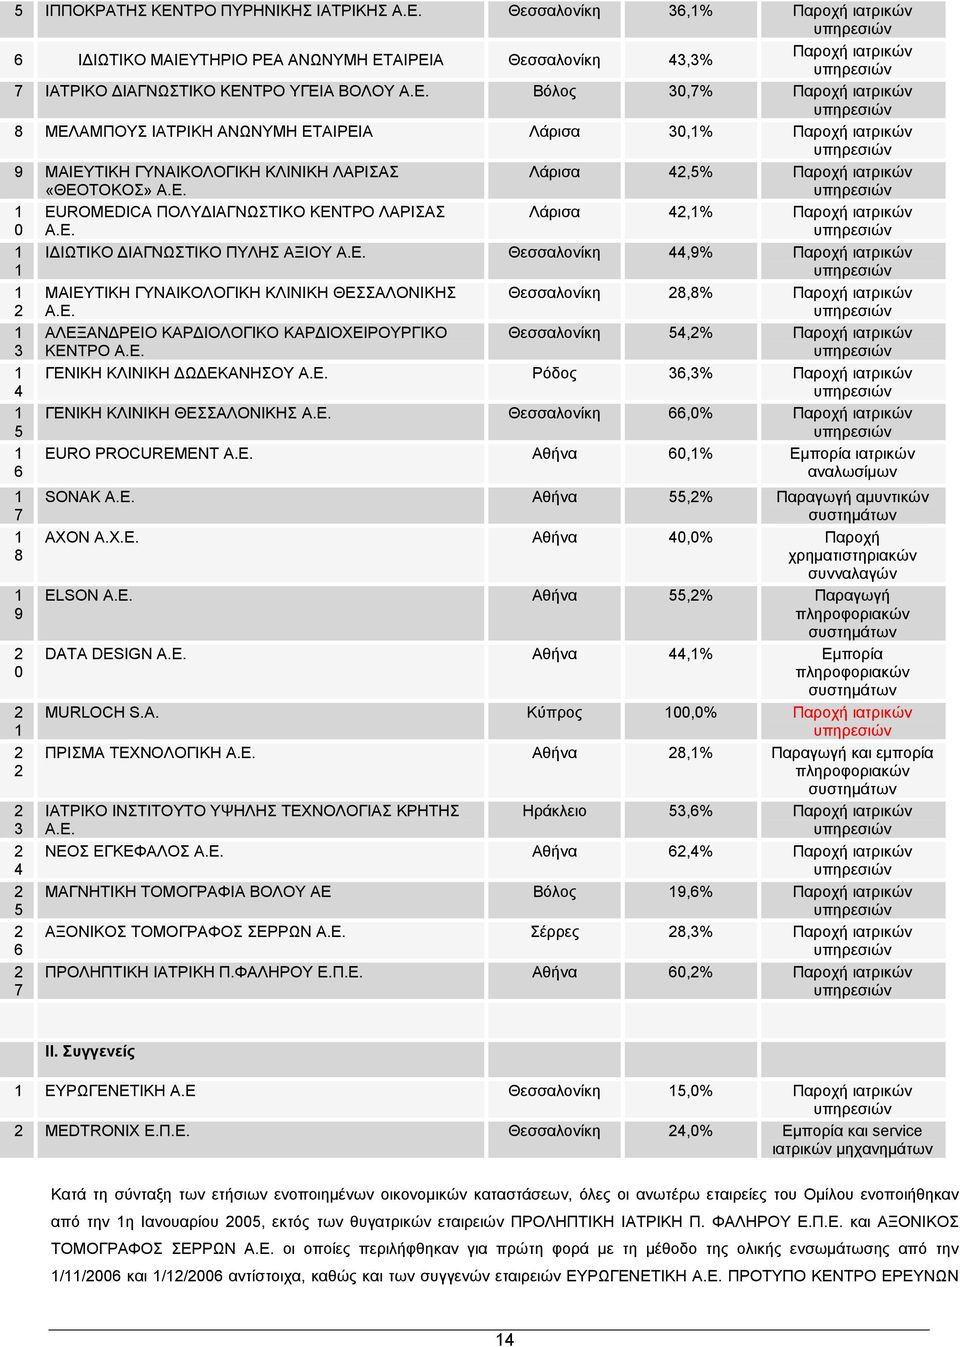 Ε. Λάρισα 42,5% Παροχή ιατρικών υπηρεσιών Λάρισα 42,1% Παροχή ιατρικών υπηρεσιών ΙΔΙΩΤΙΚΟ ΔΙΑΓΝΩΣΤΙΚΟ ΠΥΛΗΣ ΑΞΙΟΥ Α.Ε. Θεσσαλονίκη 44,9% Παροχή ιατρικών υπηρεσιών ΜΑΙΕΥΤΙΚΗ ΓΥΝΑΙΚΟΛΟΓΙΚΗ ΚΛΙΝΙΚΗ ΘΕΣΣΑΛΟΝΙΚΗΣ Α.